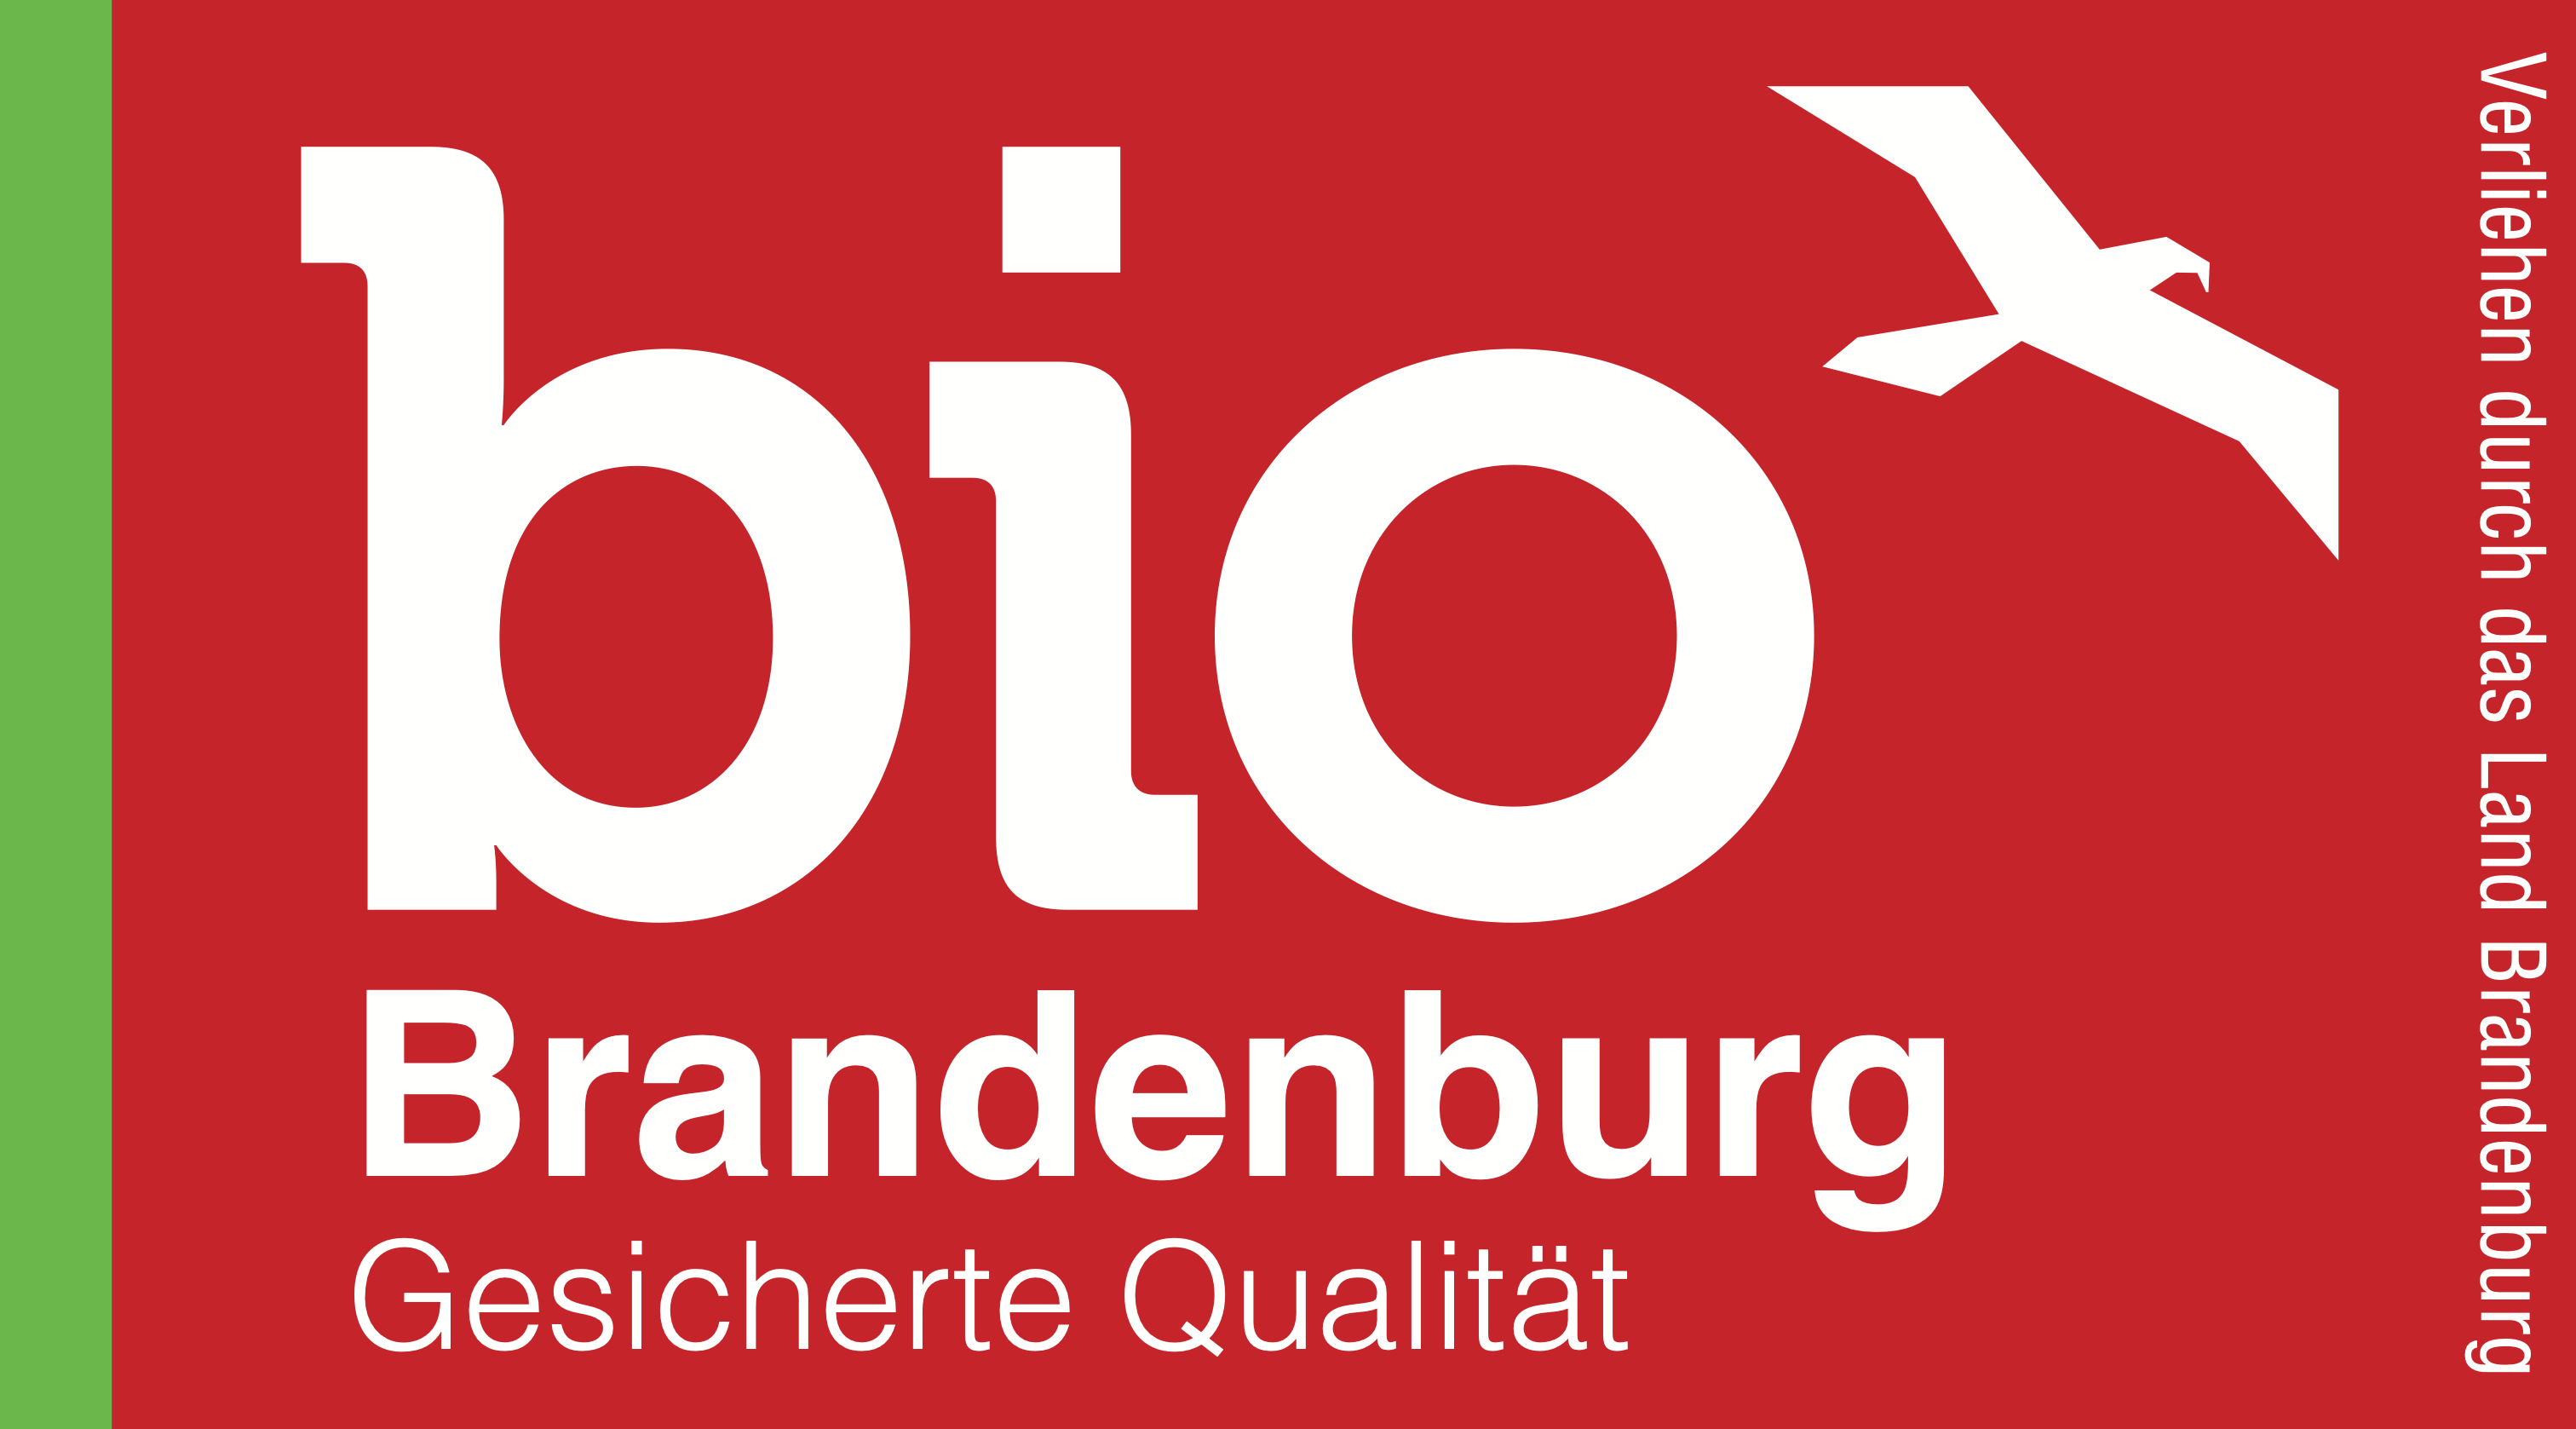 Ein rotes Logo mit der weißen Aufschrift "bio Brandenburg Gesicherte Qualität" und einem weißen Adler.